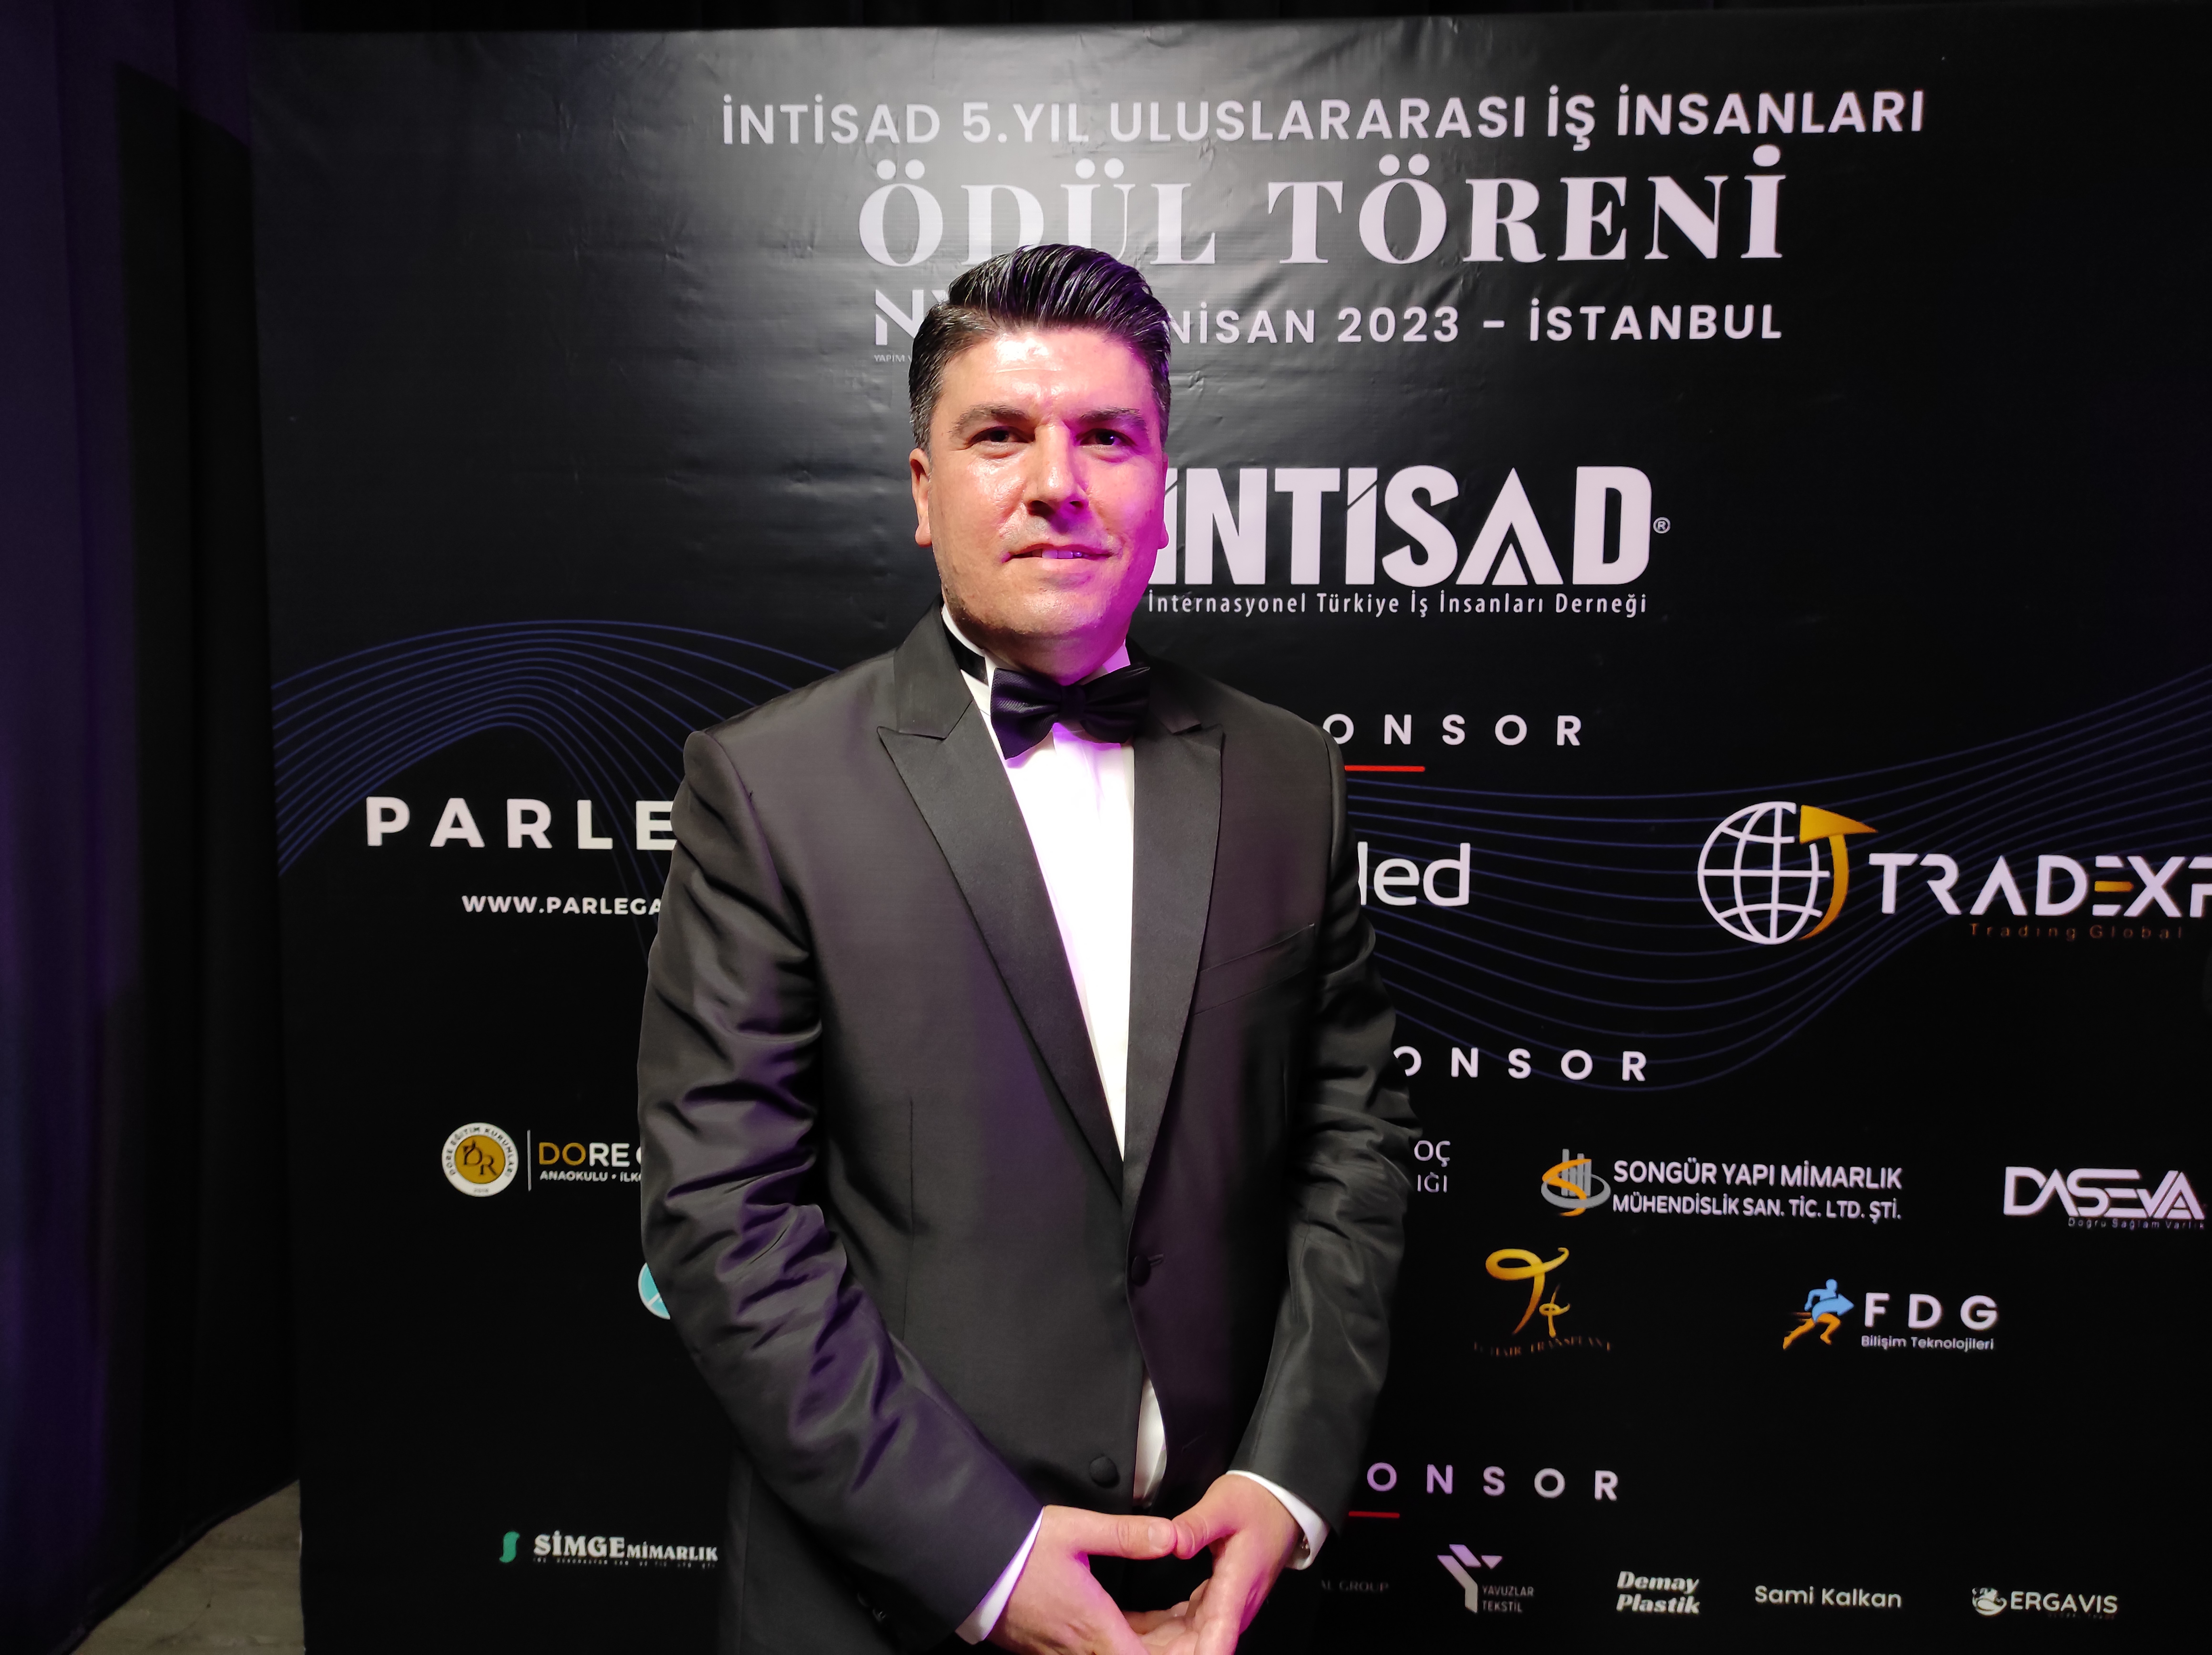 İNTİSAD Başkanı Av Selahattin Par: “Türk yatırımcılara yaklaşık 100 milyon dolarlık iş hacmi geliştirdik”-1145 etkinliği yapıldı